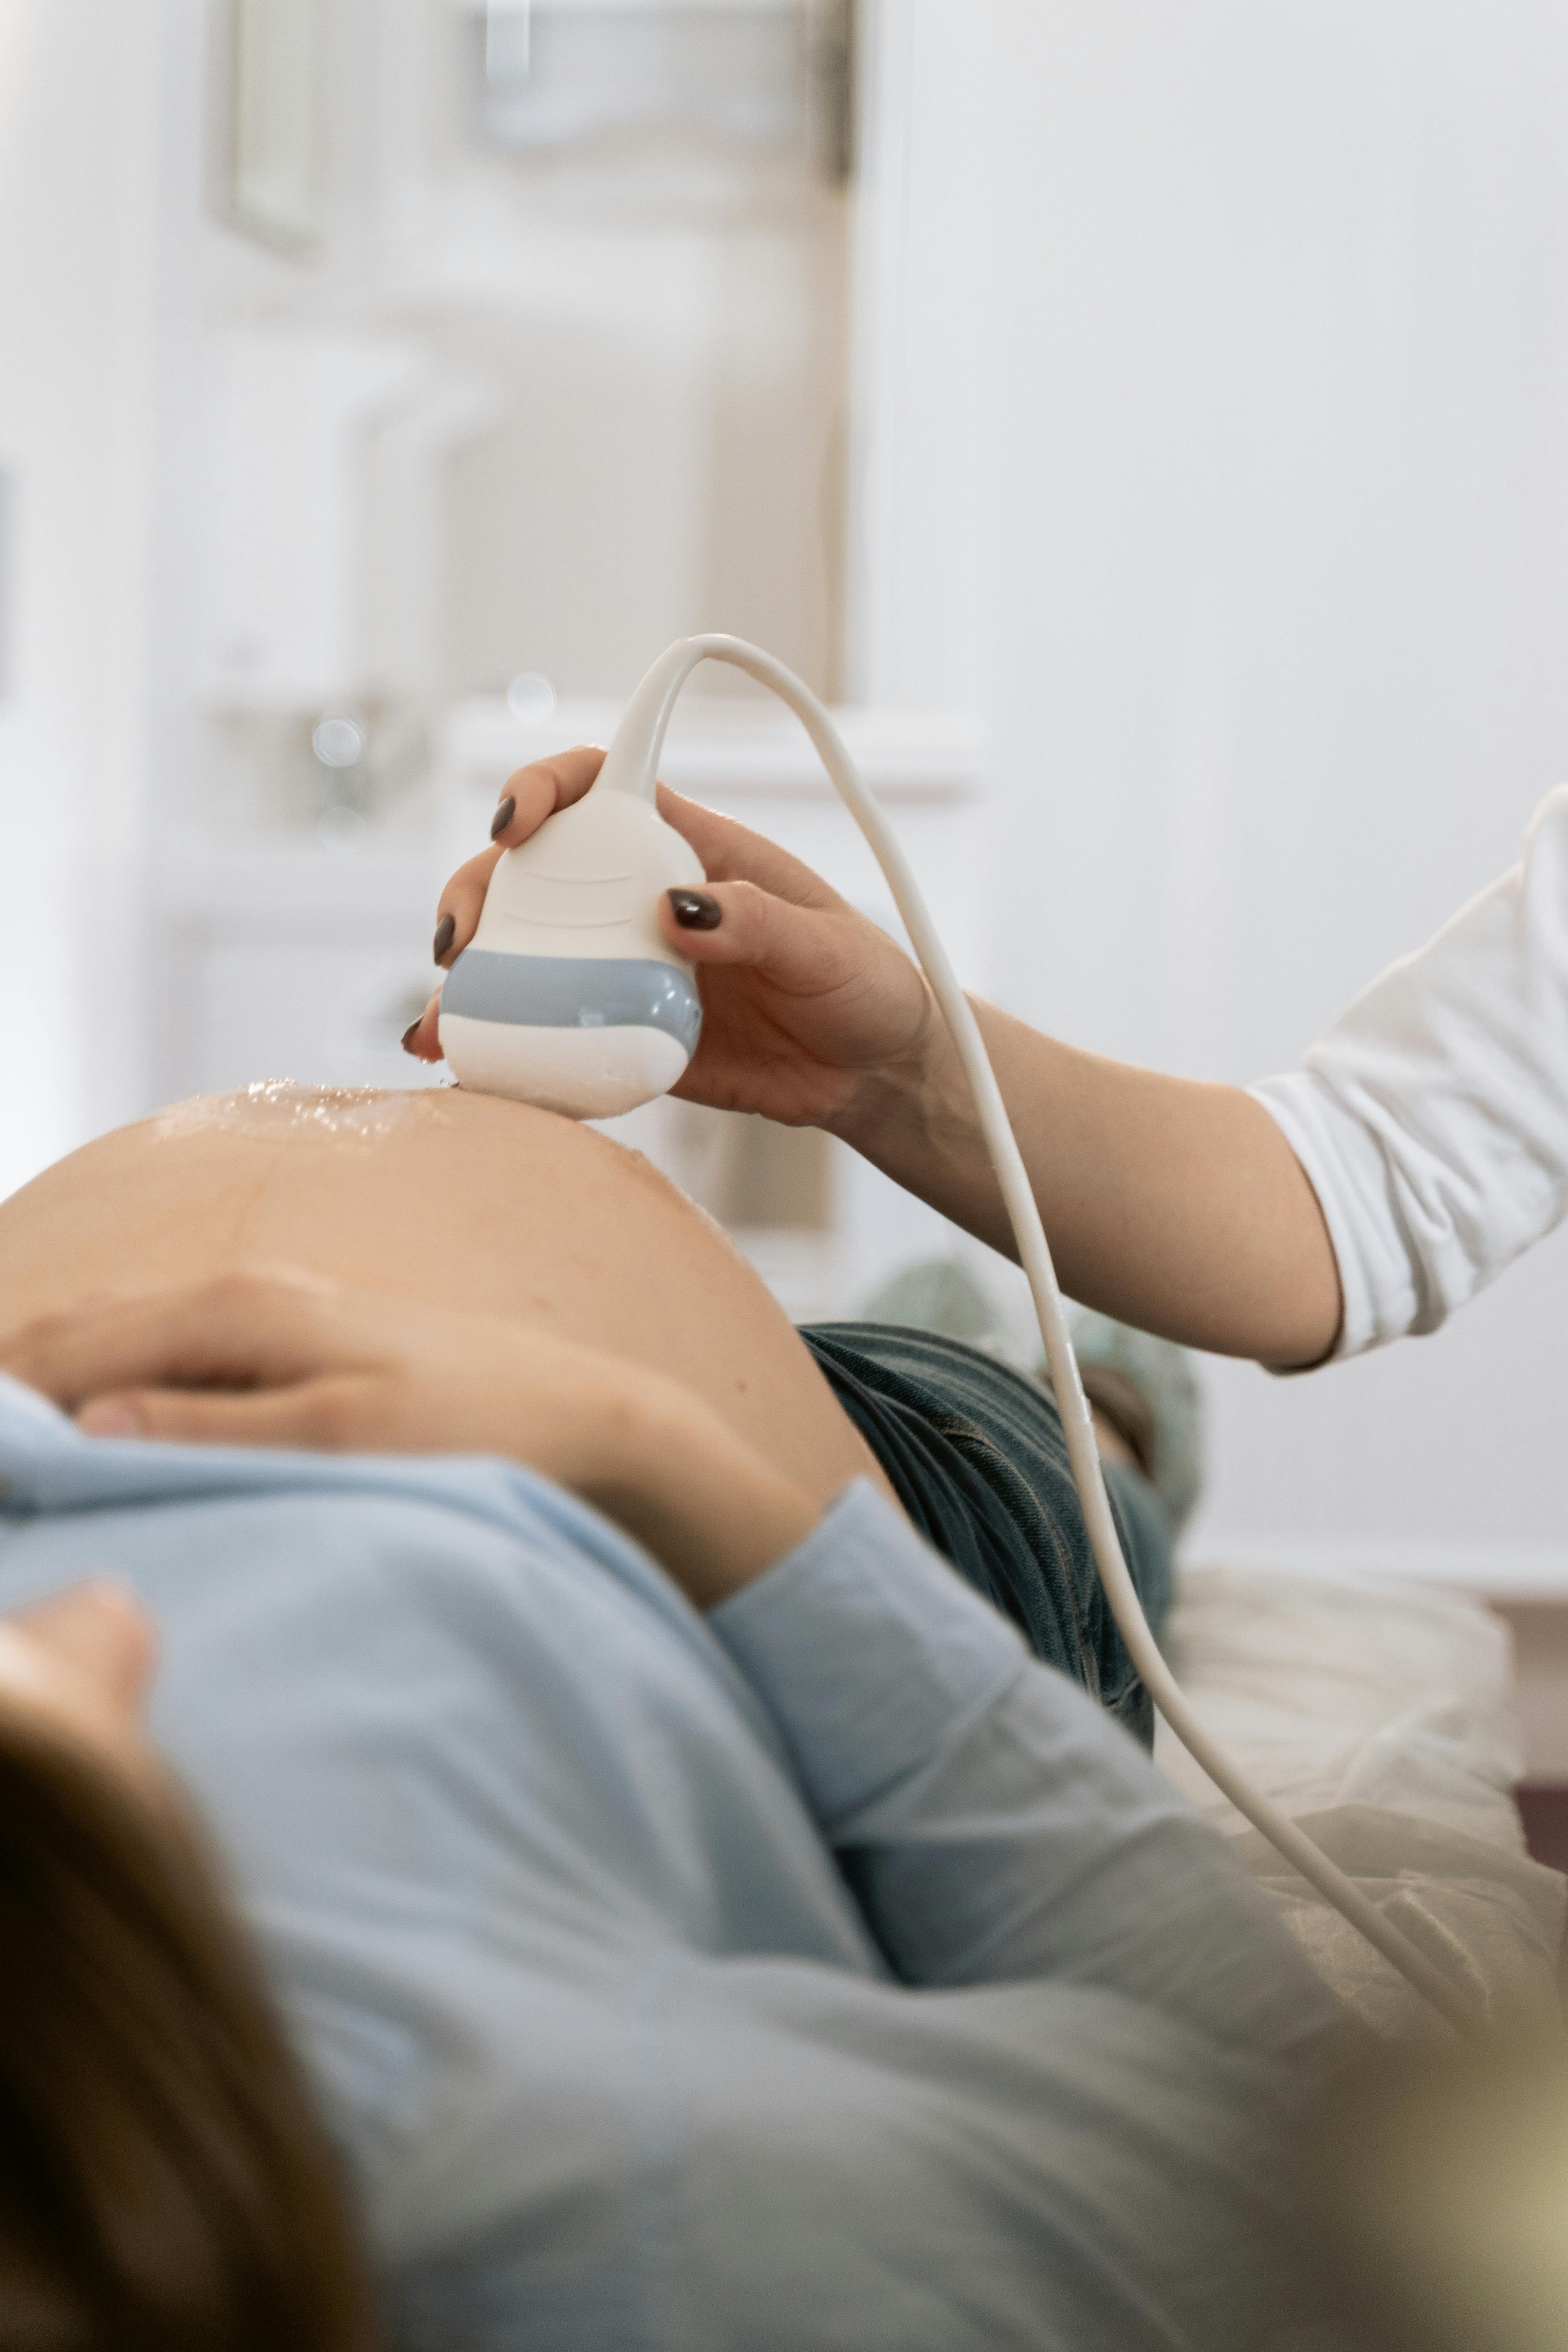 Una mujer embarazada durante una ecografía | Foto: Pexels